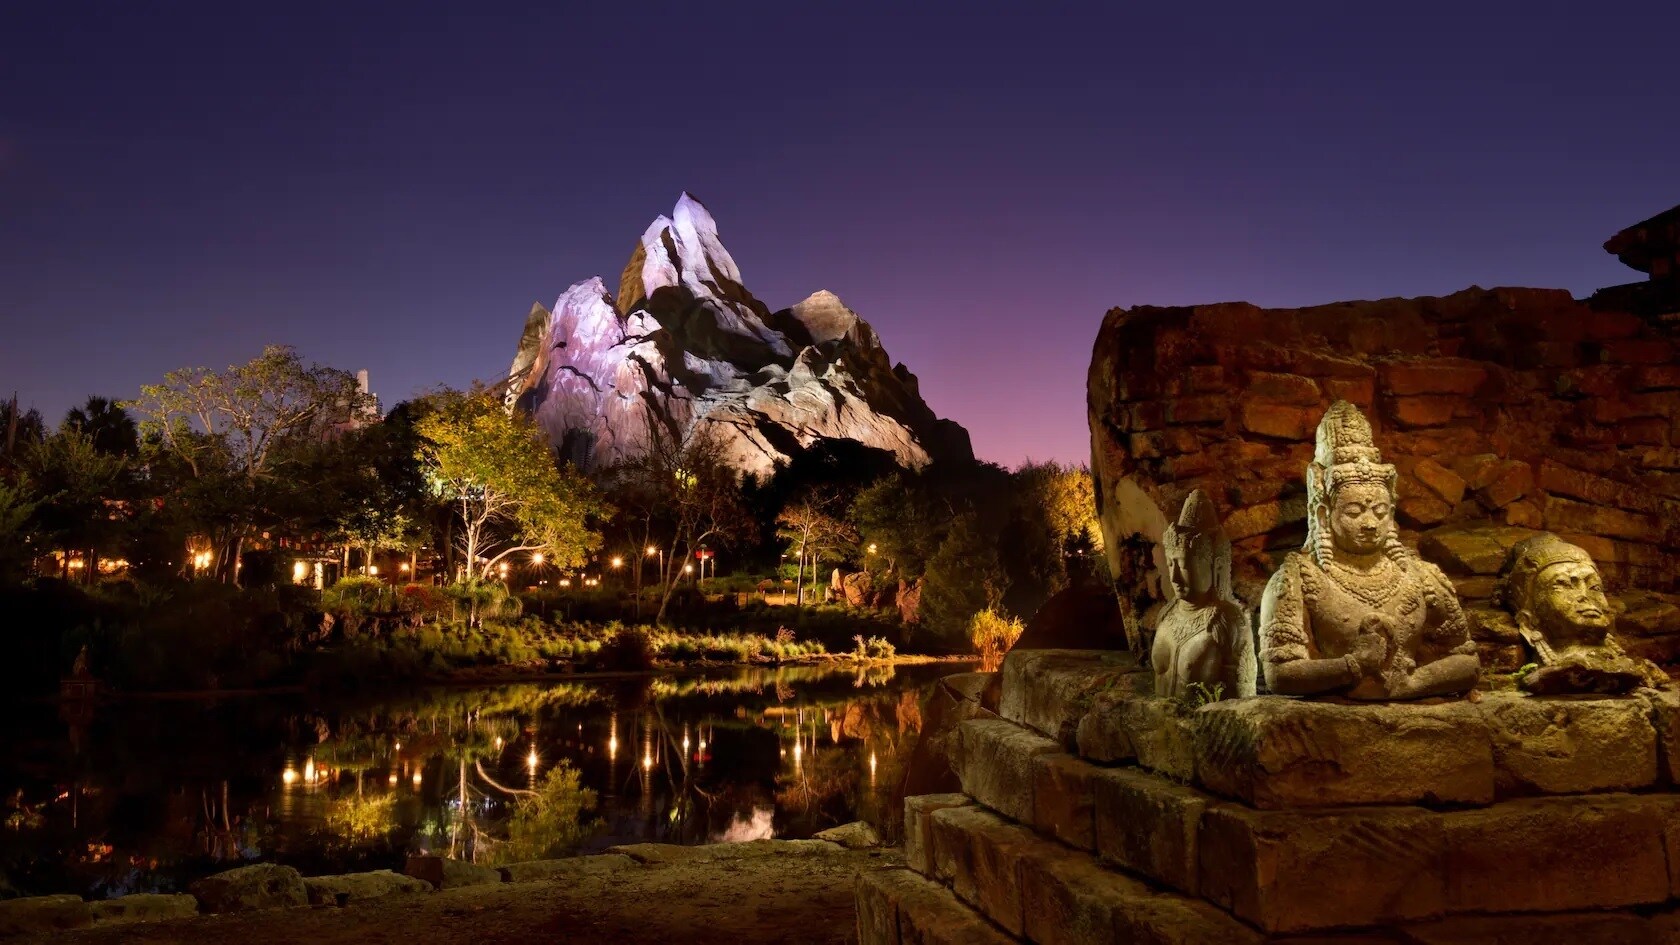 As 5 atrações que você não pode perder nos parques temáticos da Disney